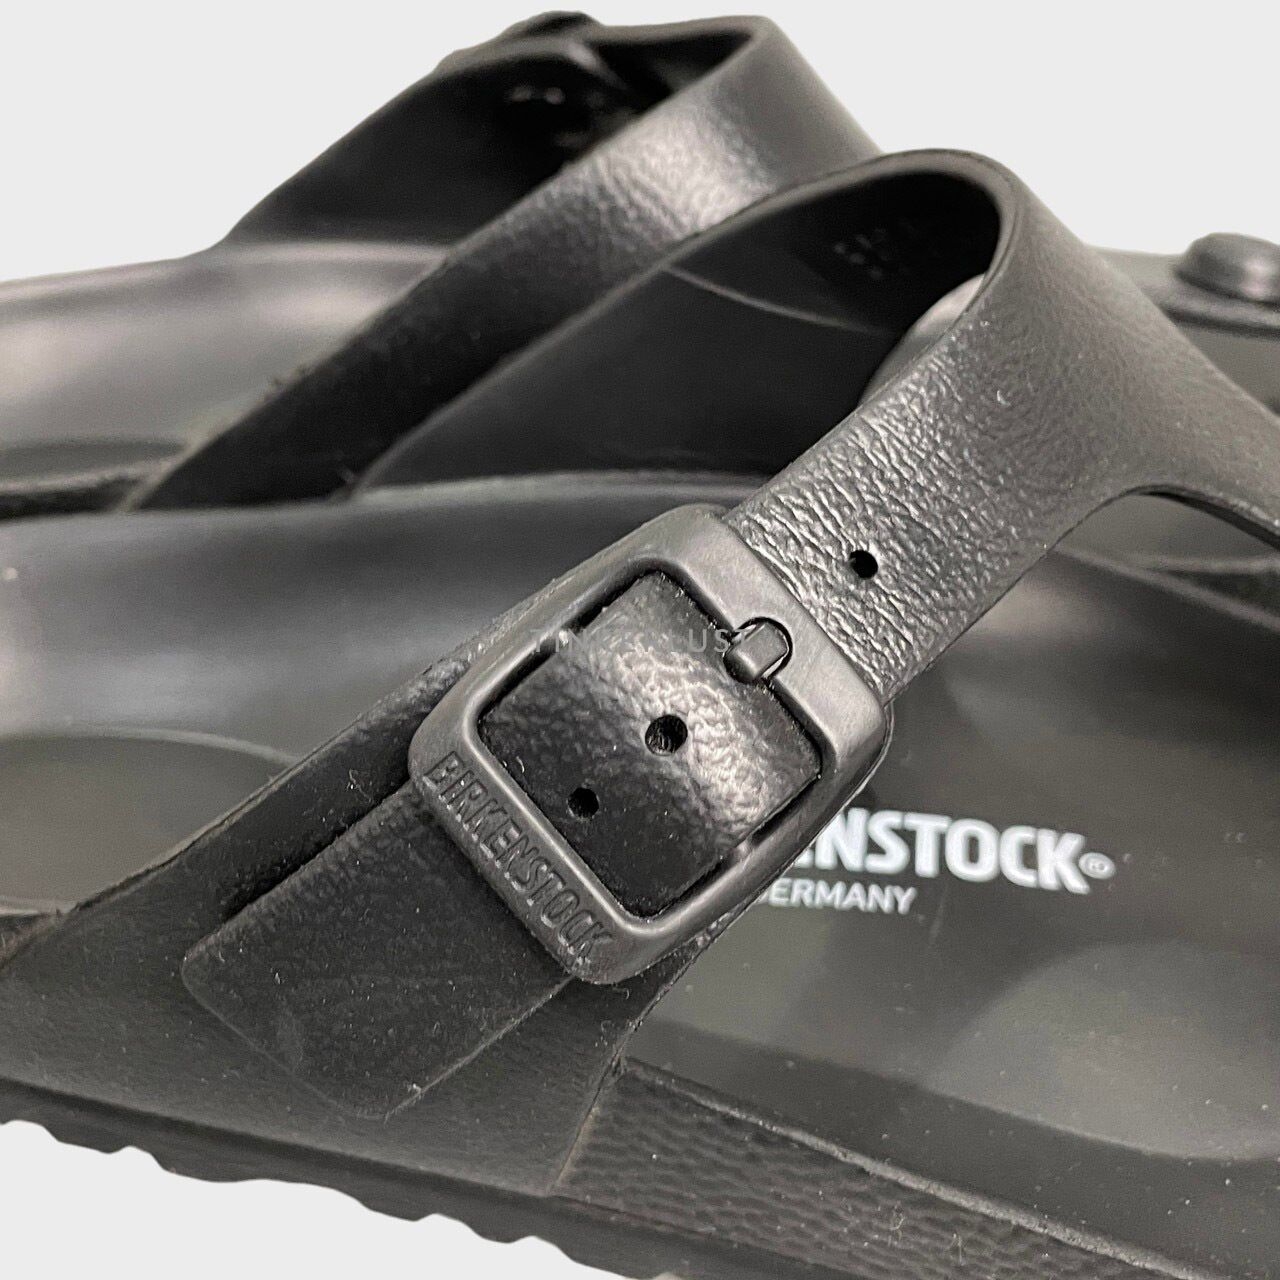 Birkenstock Black Sandals